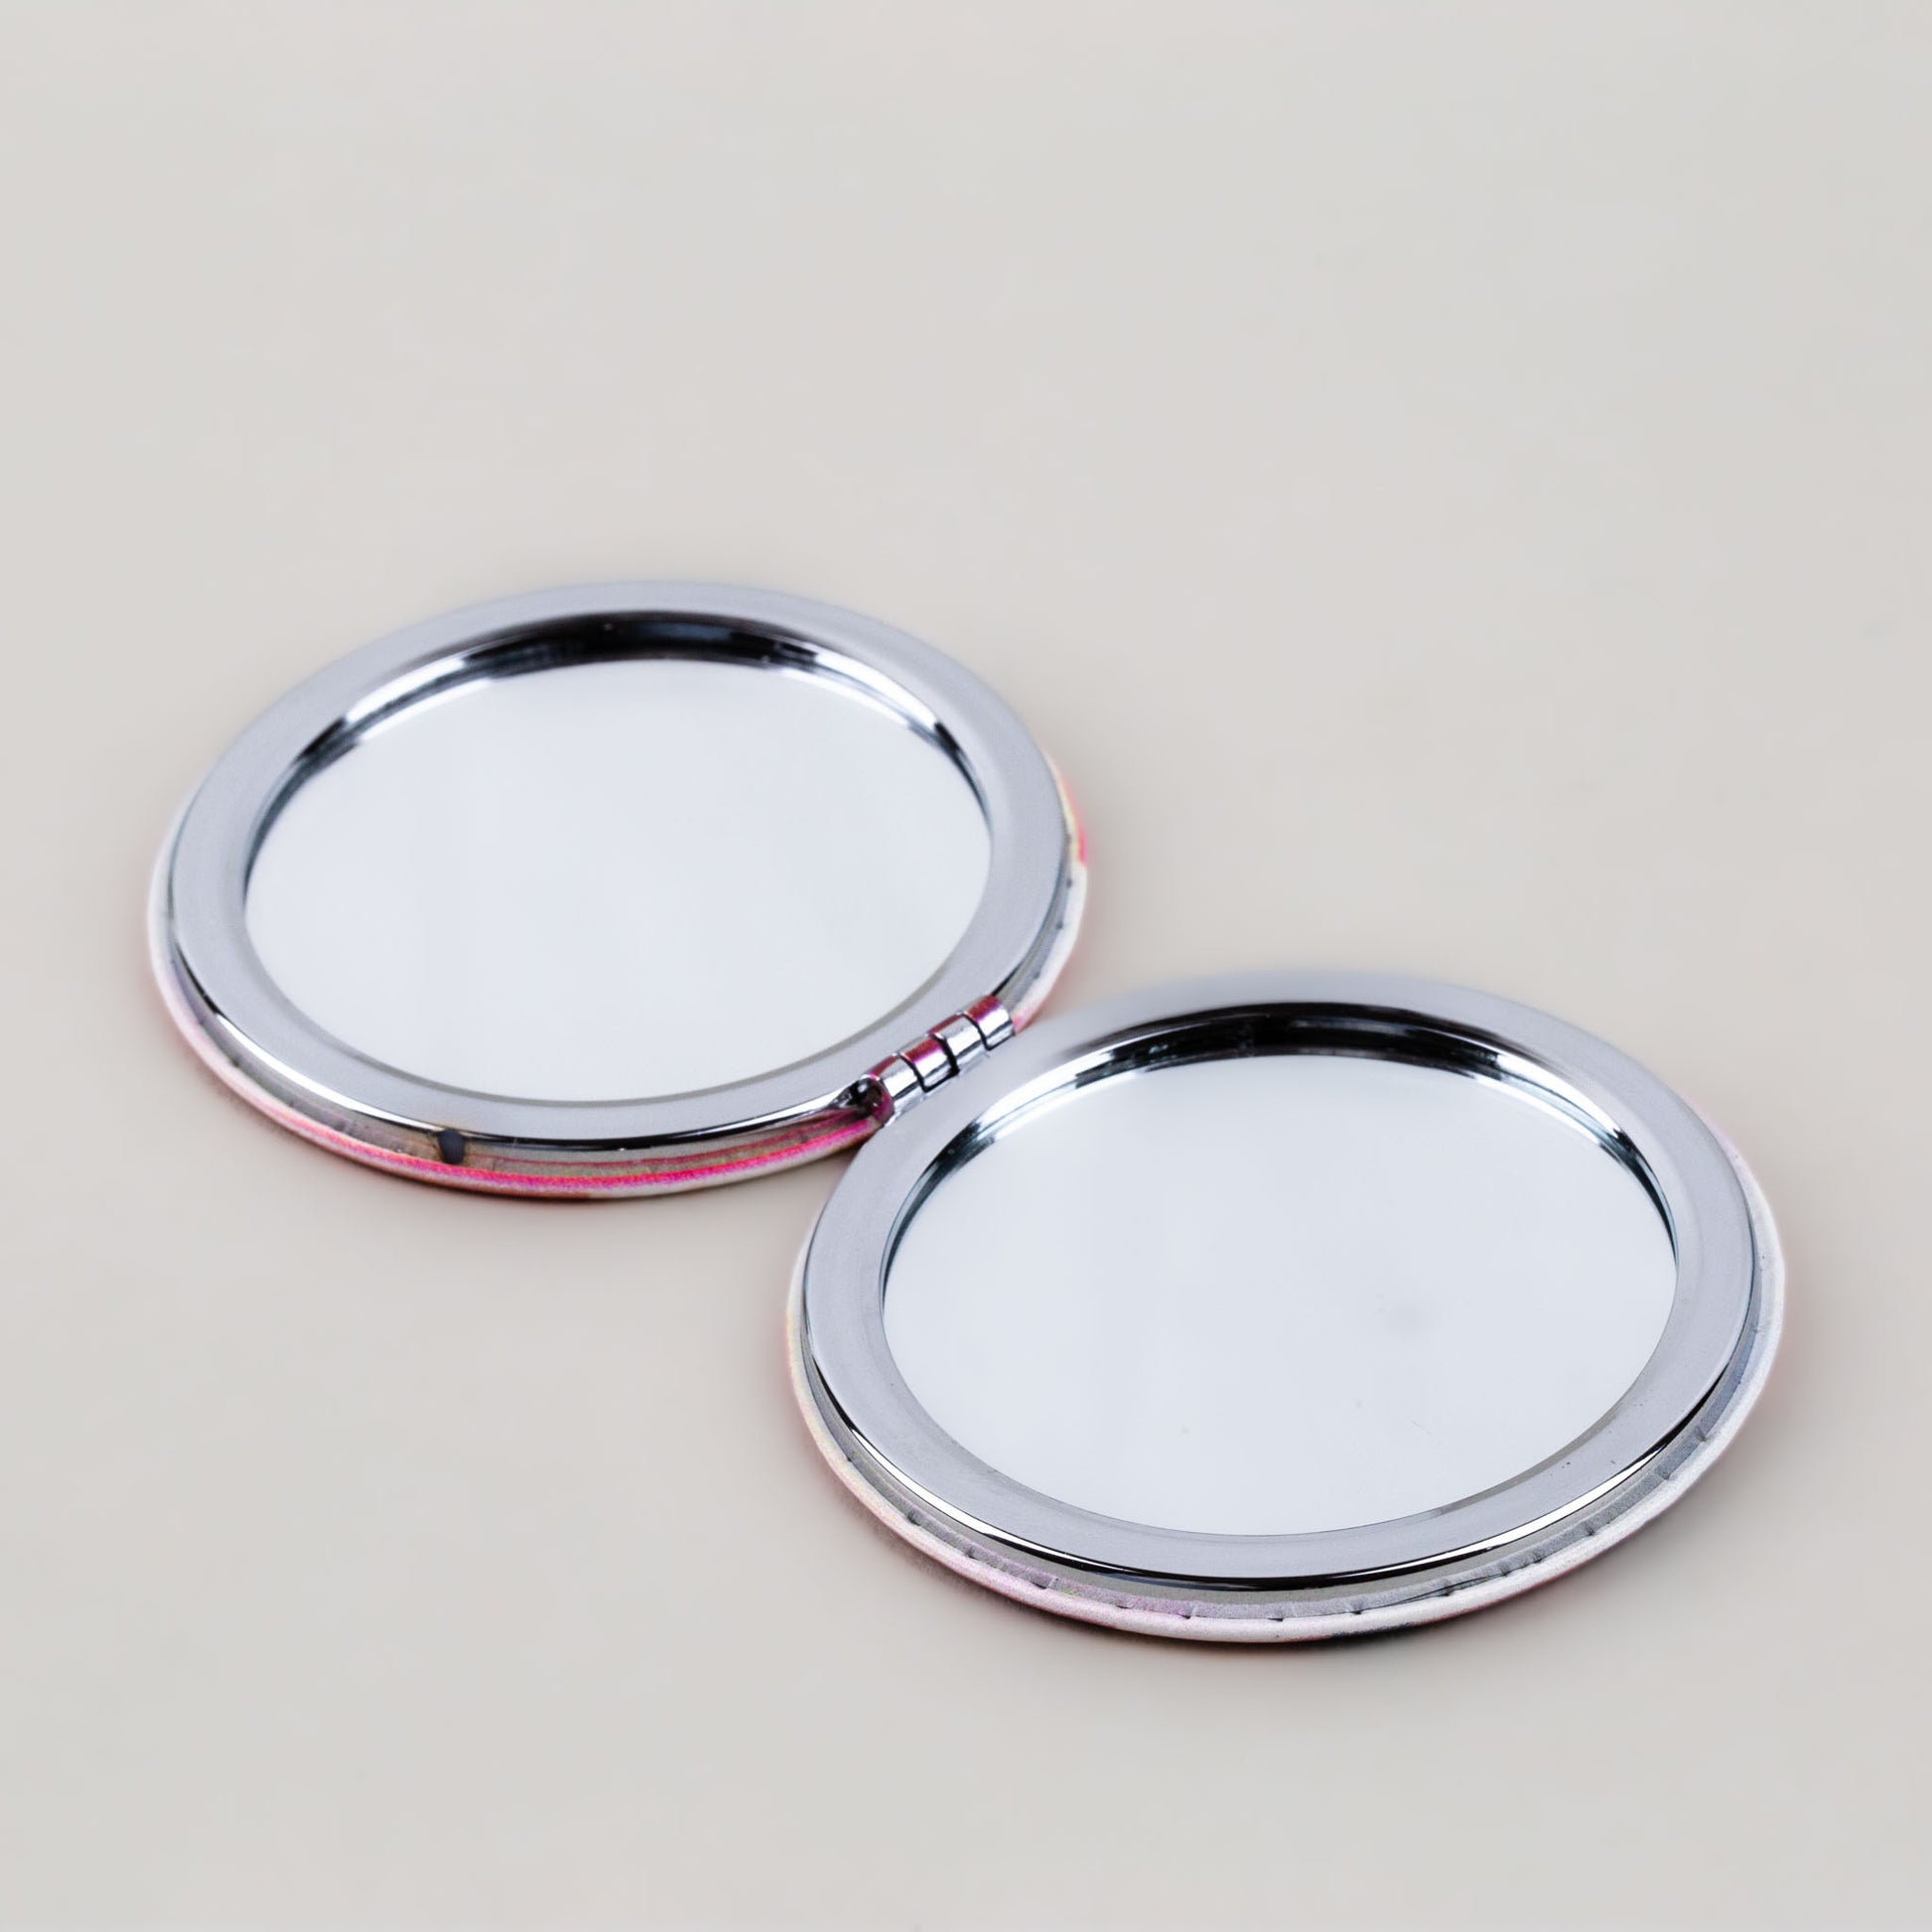 Oglindă de poșetă, formă rotundă cu 2 părți, model fragrance - De Parfum